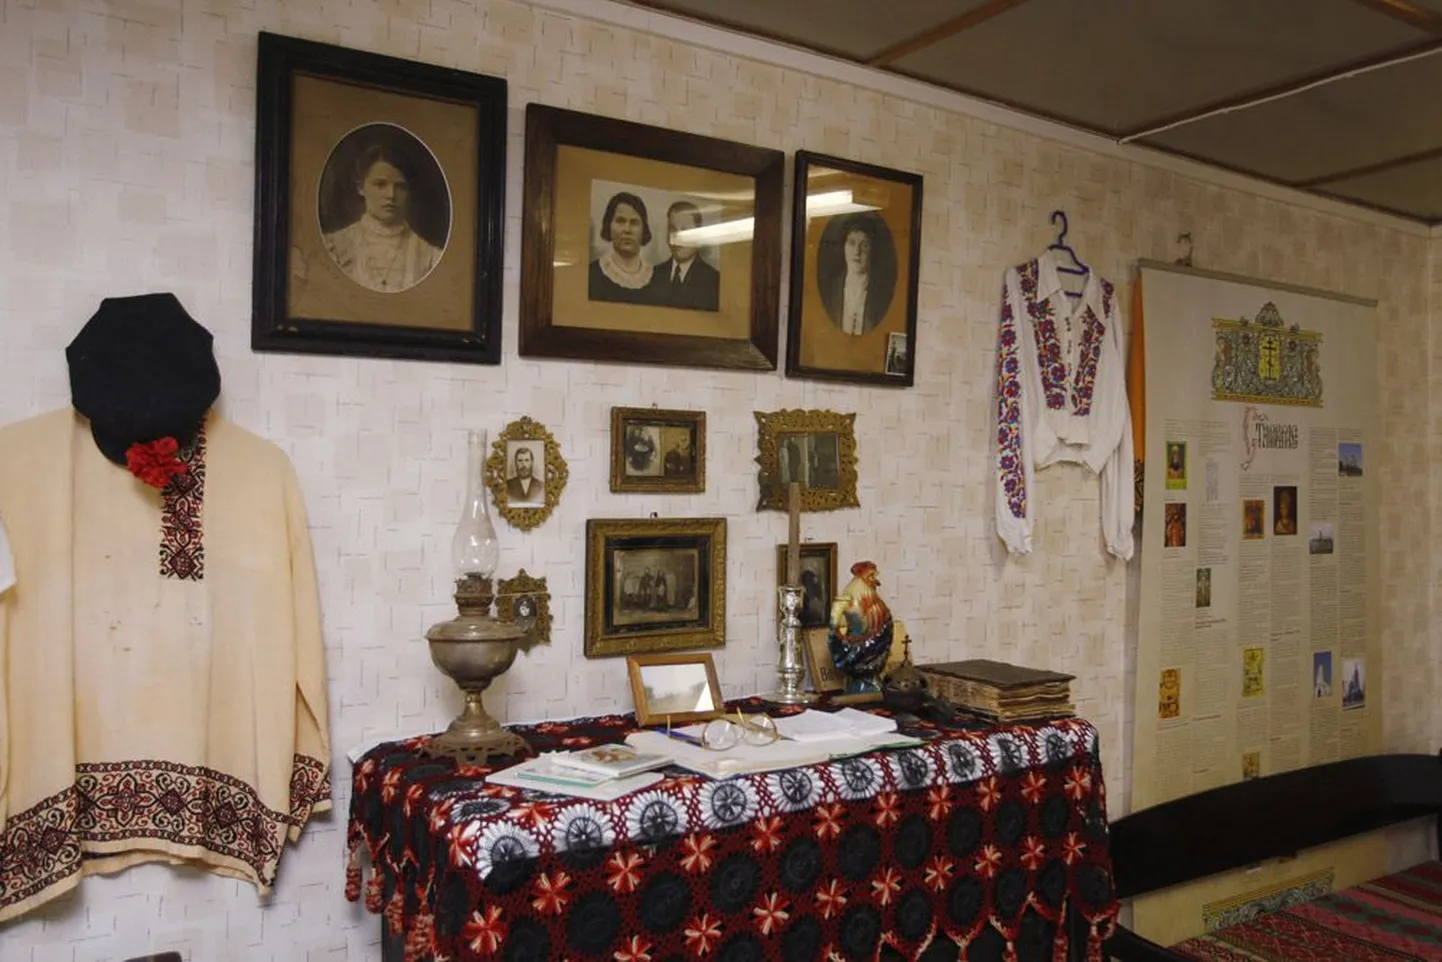 Музей в деревне Колкья на берегу Чудского озера рассказывает о быте и традициях староверов.